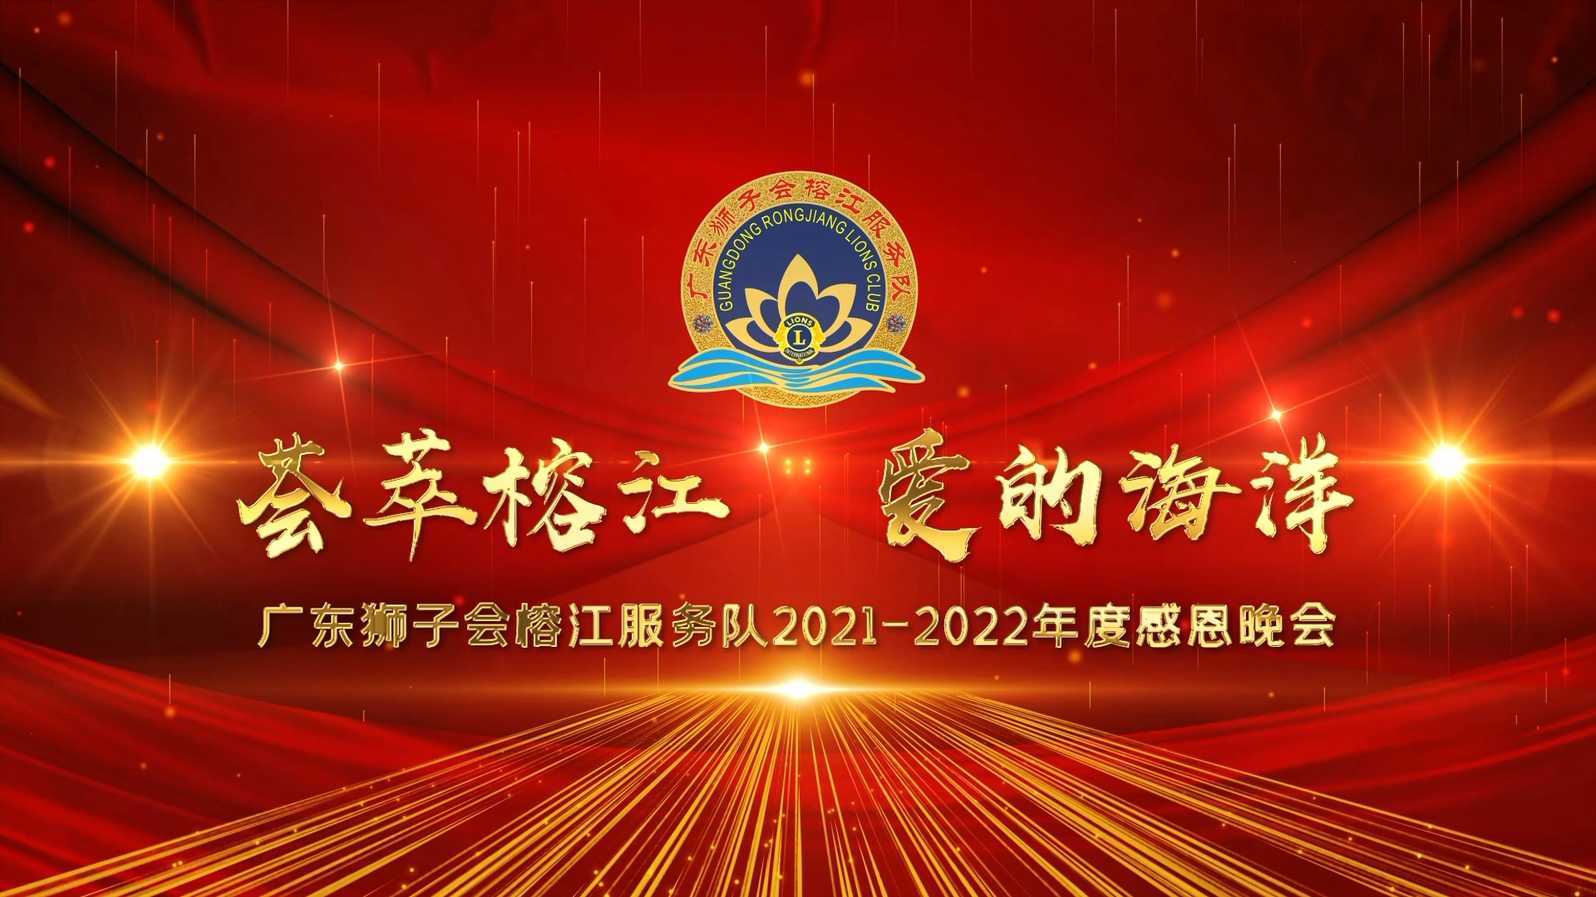 荟萃榕江 爱的海洋 ▏广东狮子会榕江服务队2021-2022年度感恩晚会